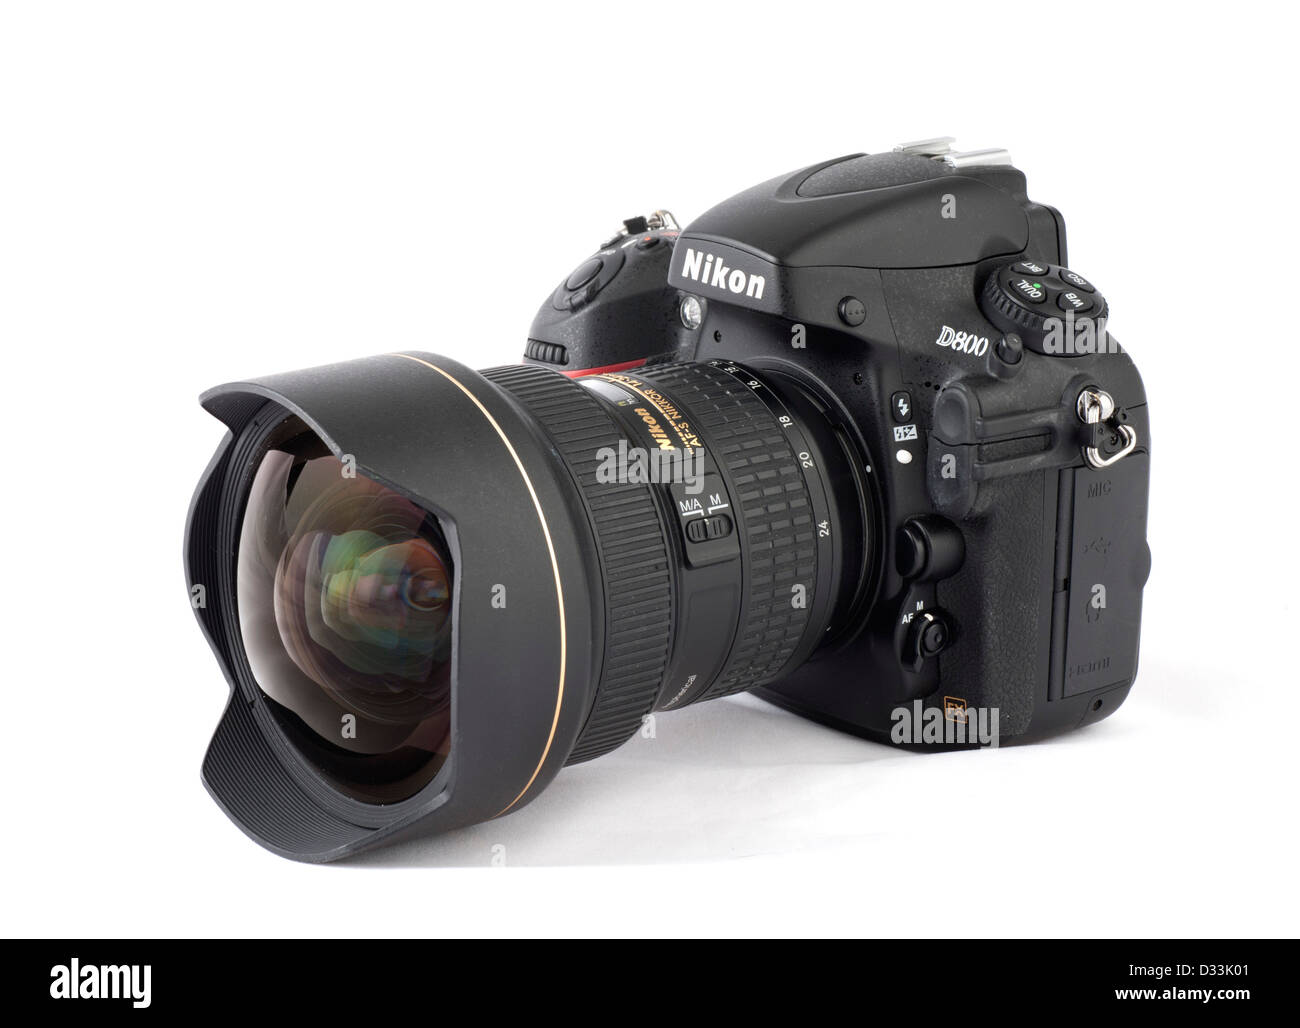 Una Nikon D800 cámara digital SLR con AF-S Nikkor 14-24mm F2.8 G ED lente zoom Foto de stock